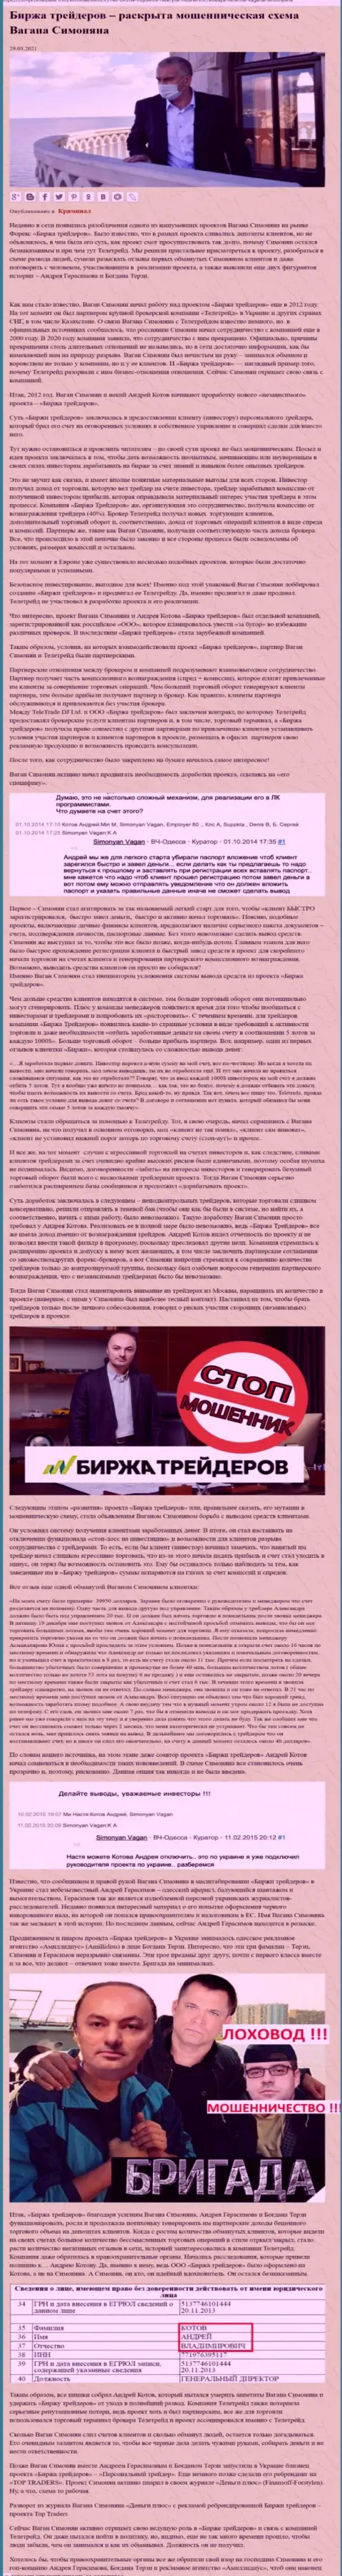 Пиаром организации Б Трейдерс, тесно связанной с мошенниками TeleTrade Ru, тоже занимался Терзи Богдан Михайлович